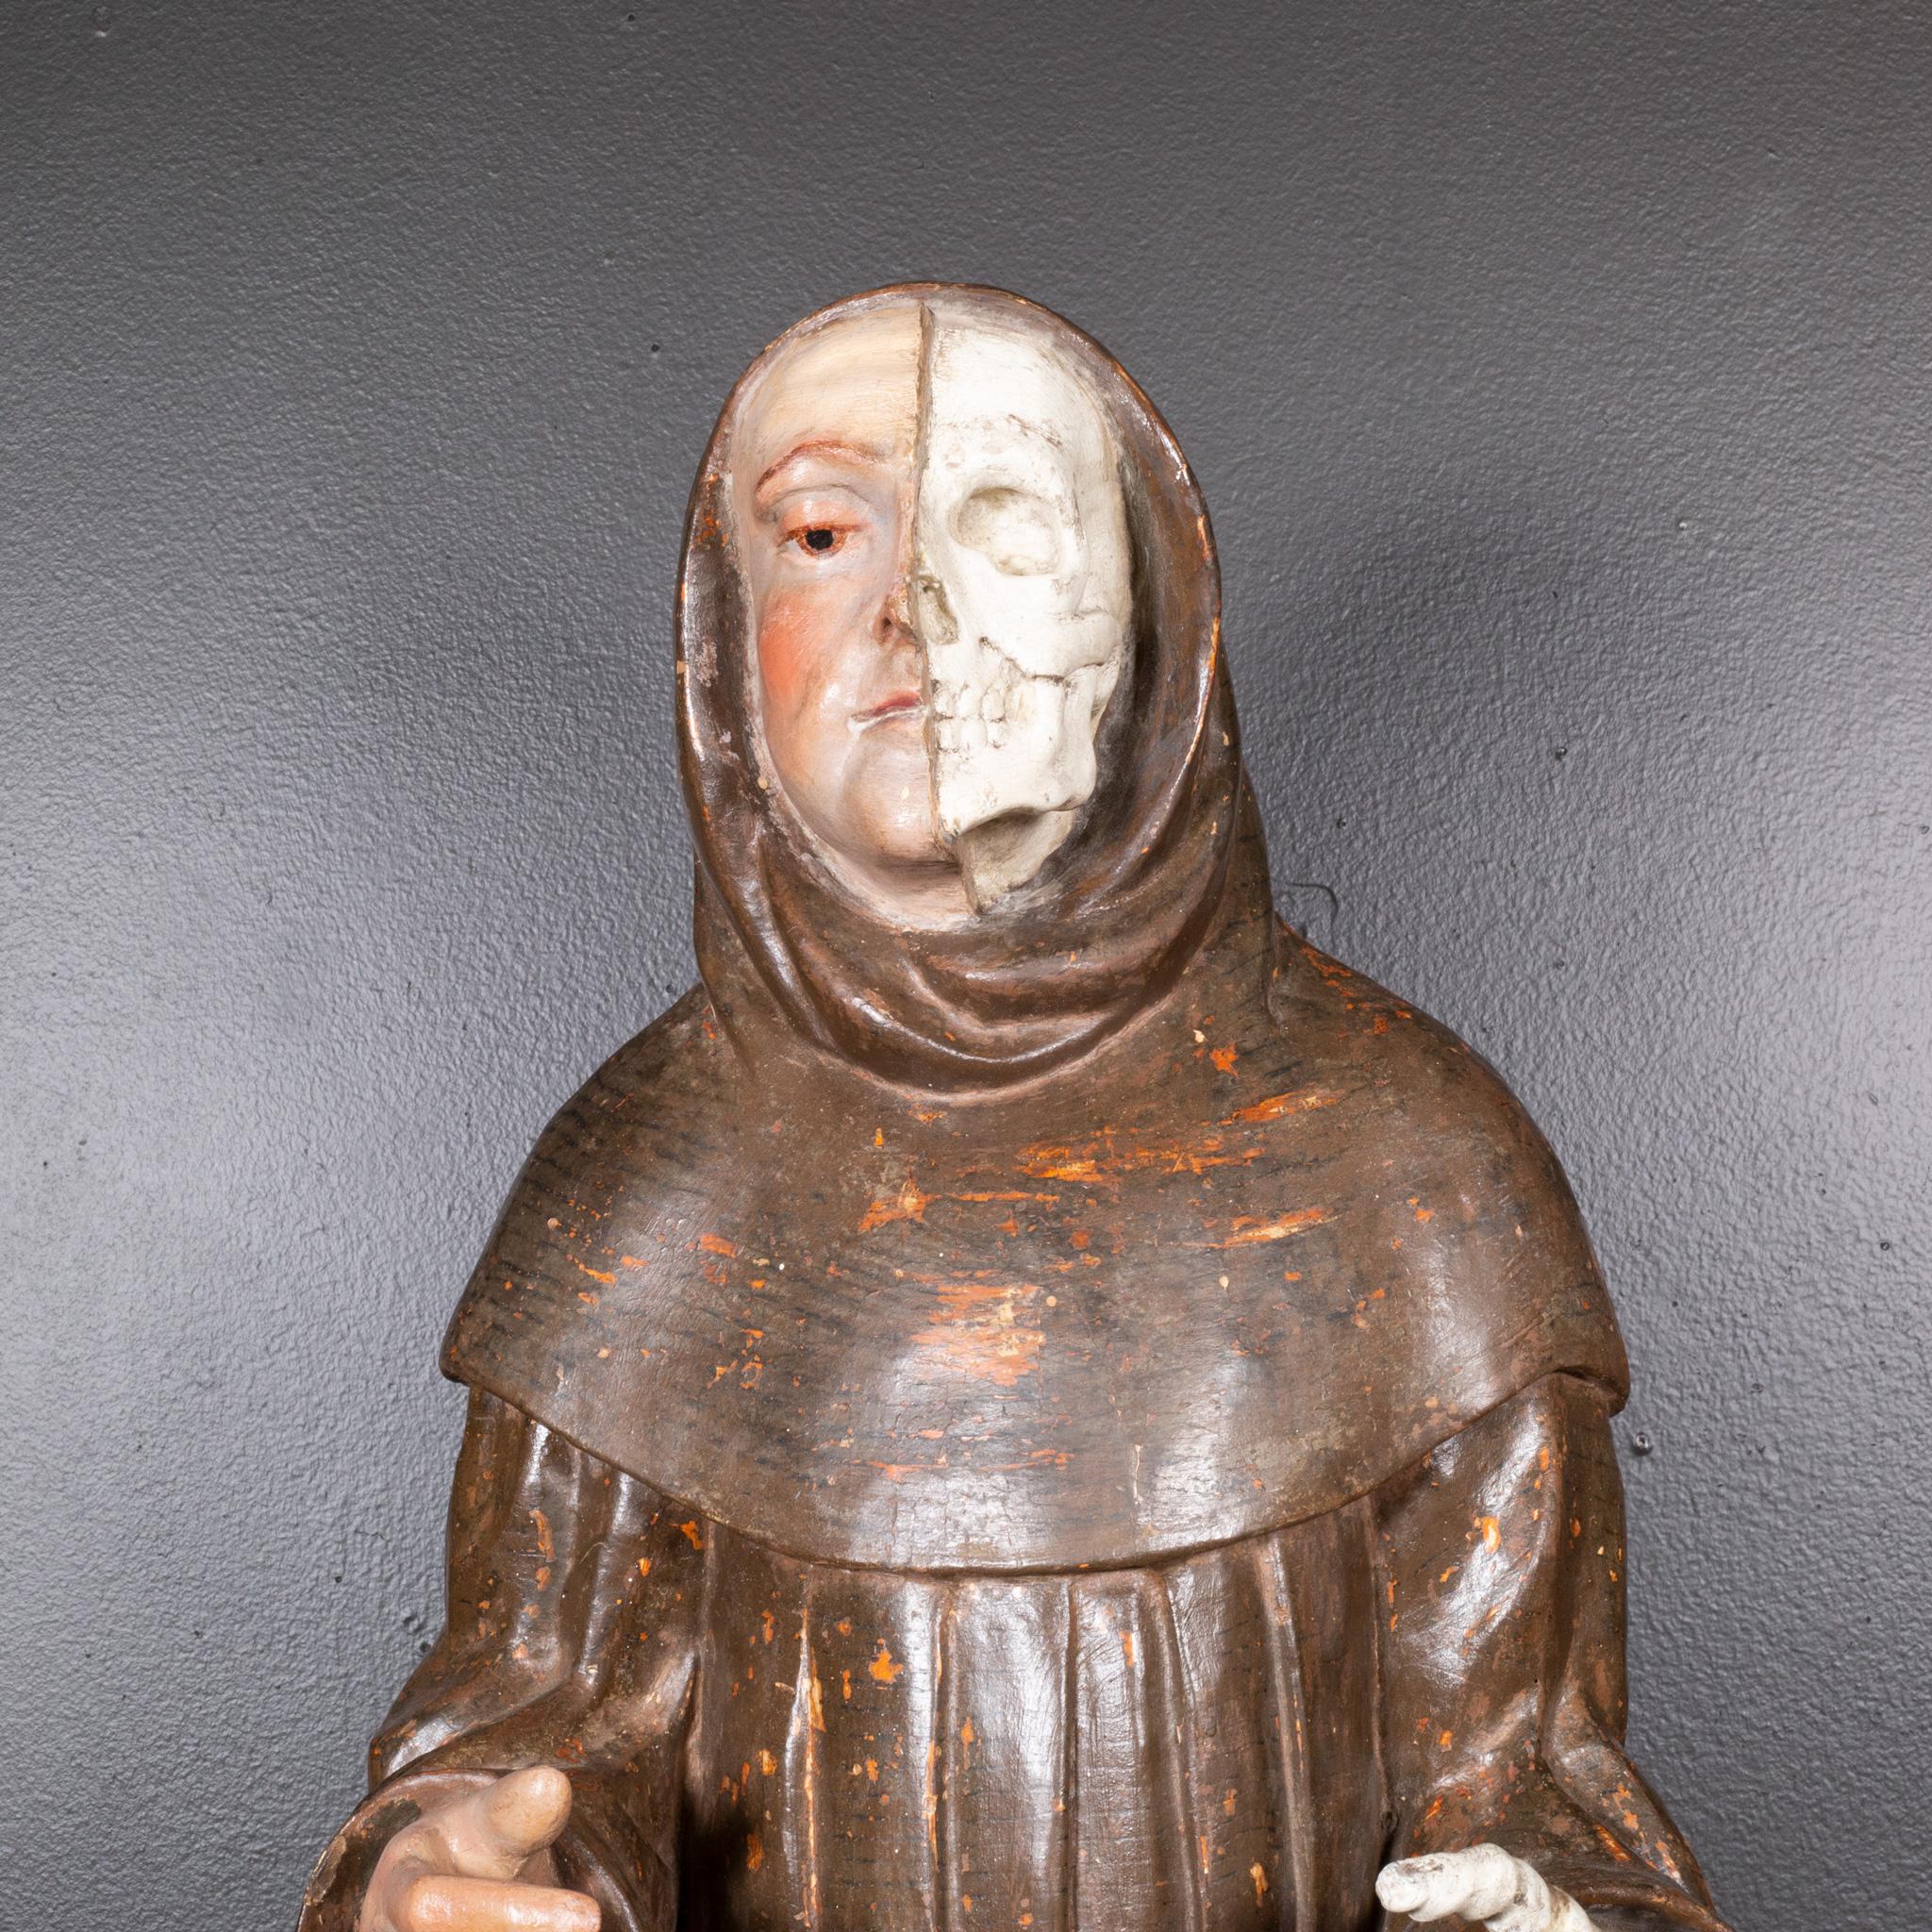 ÜBER

Kontaktieren Sie uns für weitere Versandoptionen. Kostenlose Lieferung in der Bay Area. S16 Home San Francisco. 

Außergewöhnliche große Memento Mori-Skulptur in Polychromie, die einen halb gehäuteten Mönch darstellt. Deutsch 17. Jahrhundert.